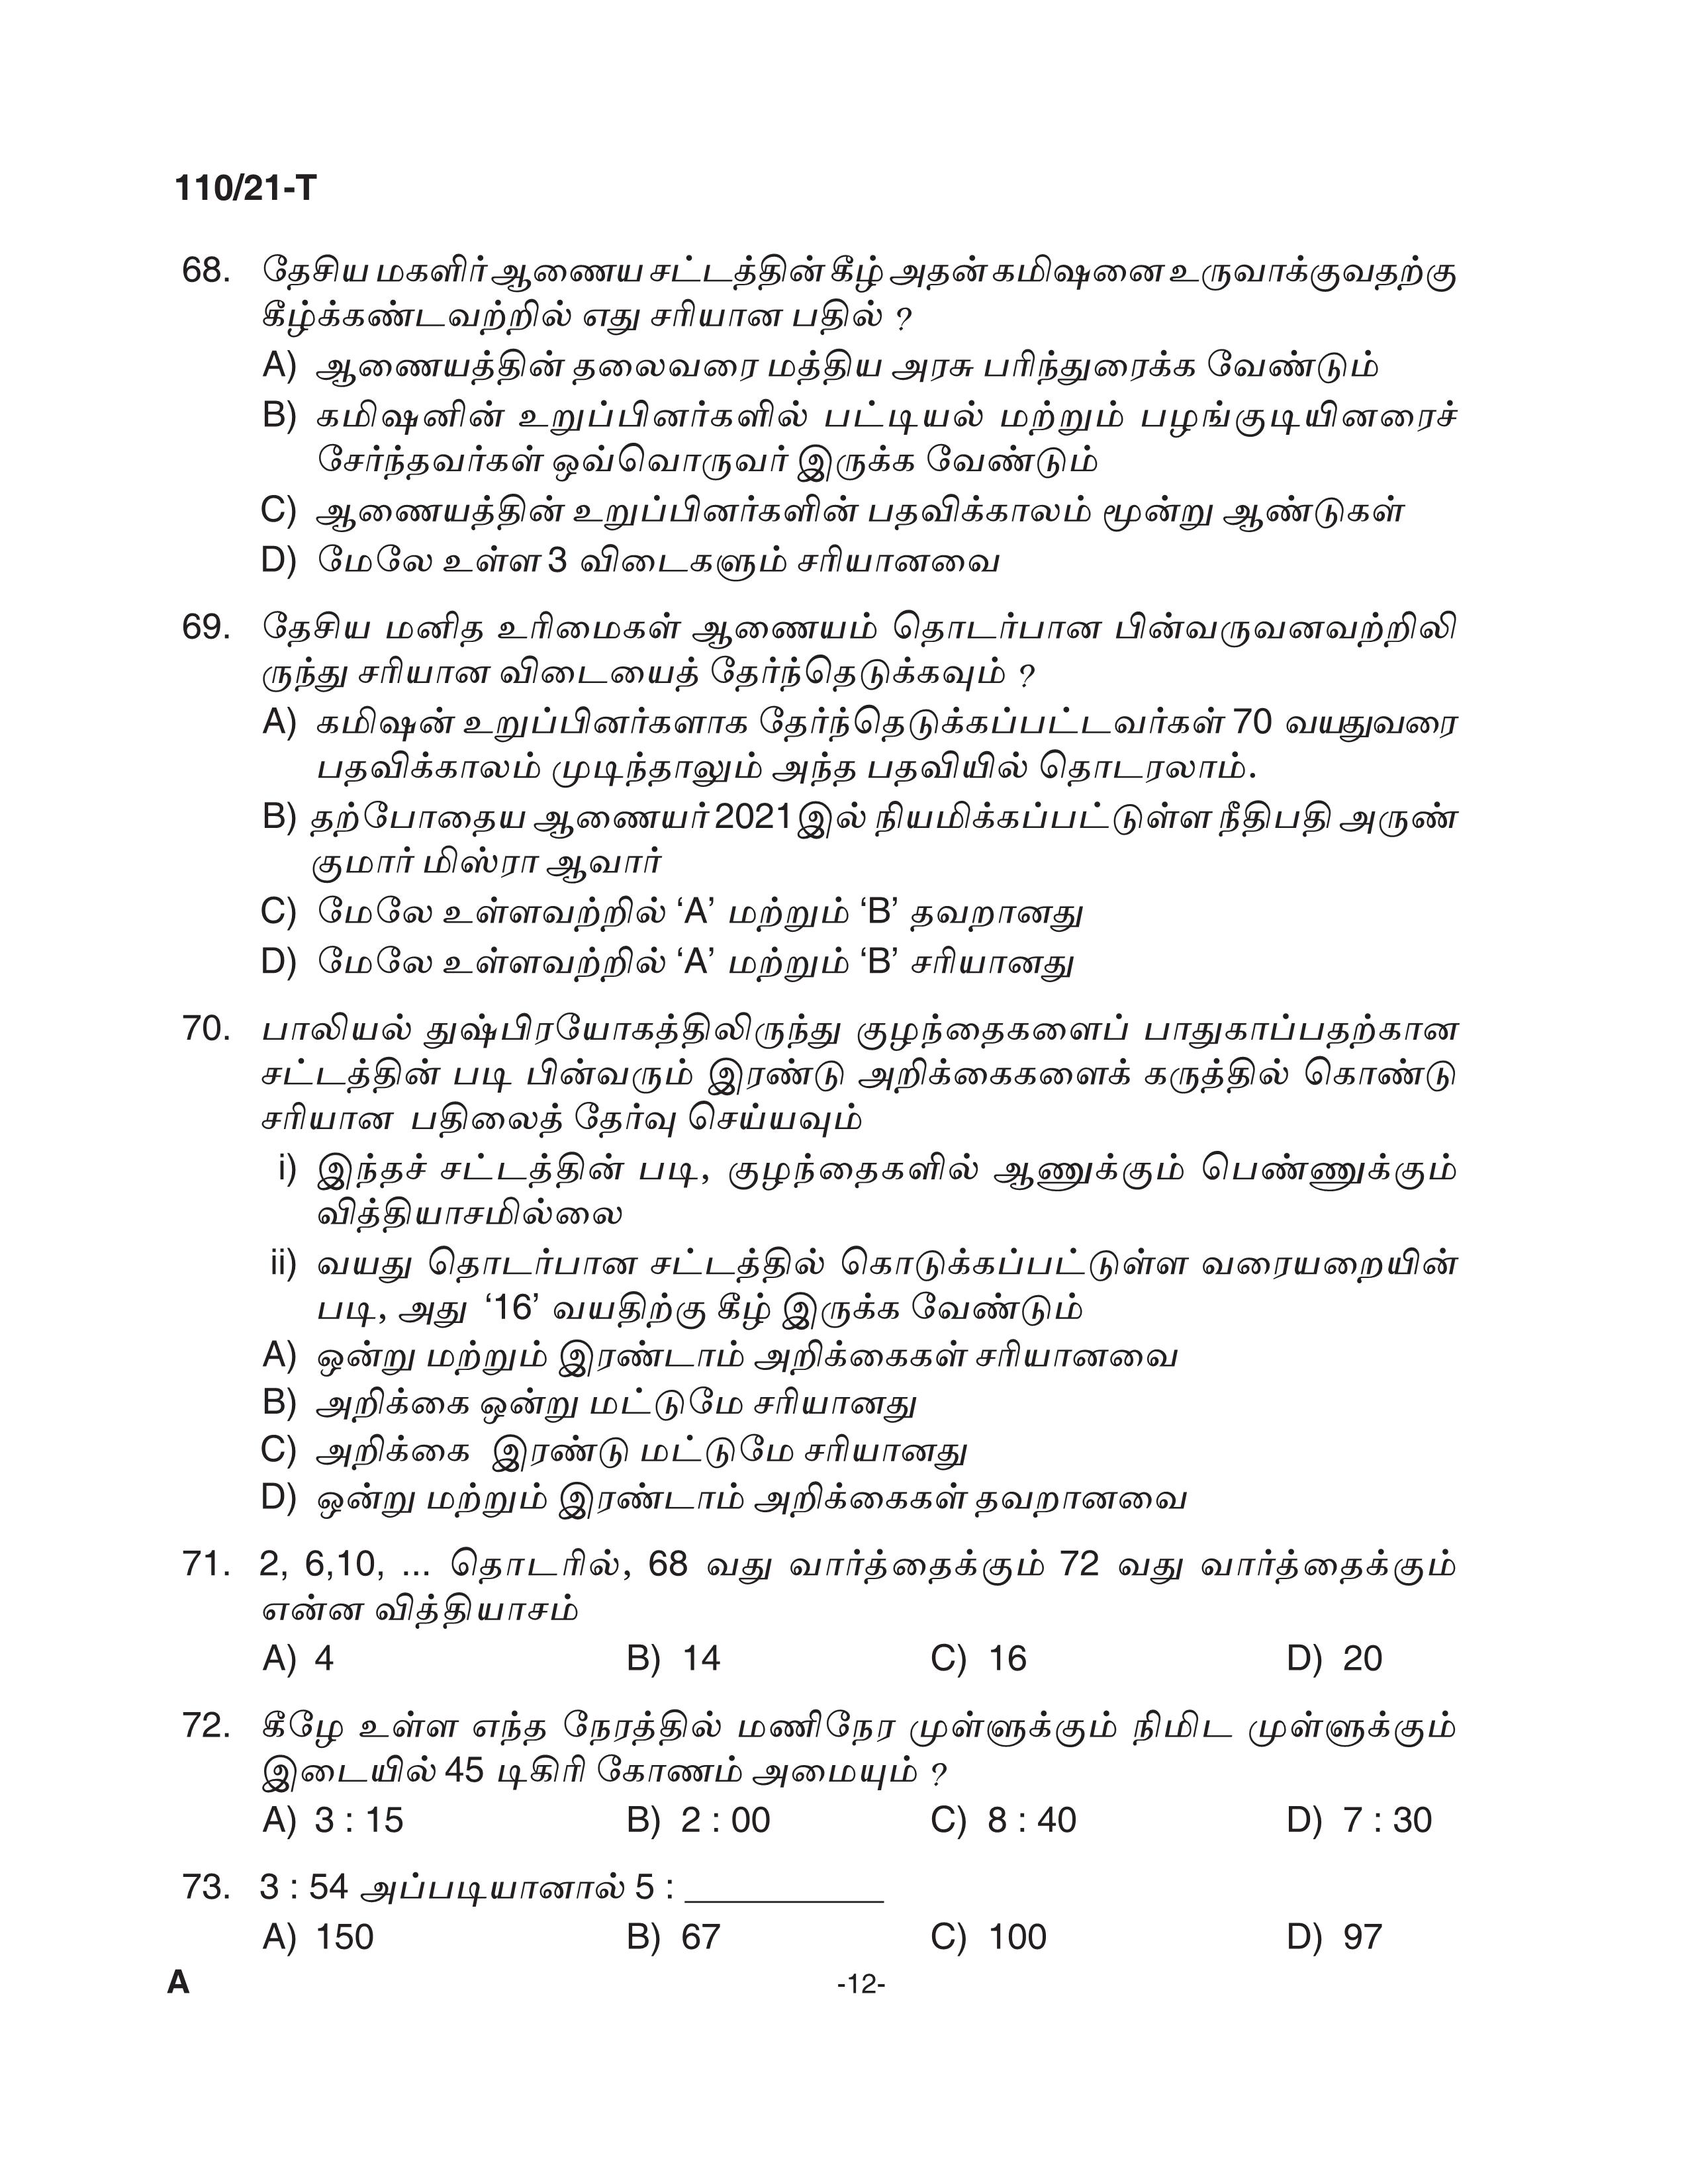 KPSC Assistant Grade II Sergeant Tamil Exam 2021 Code 1102021 T 11